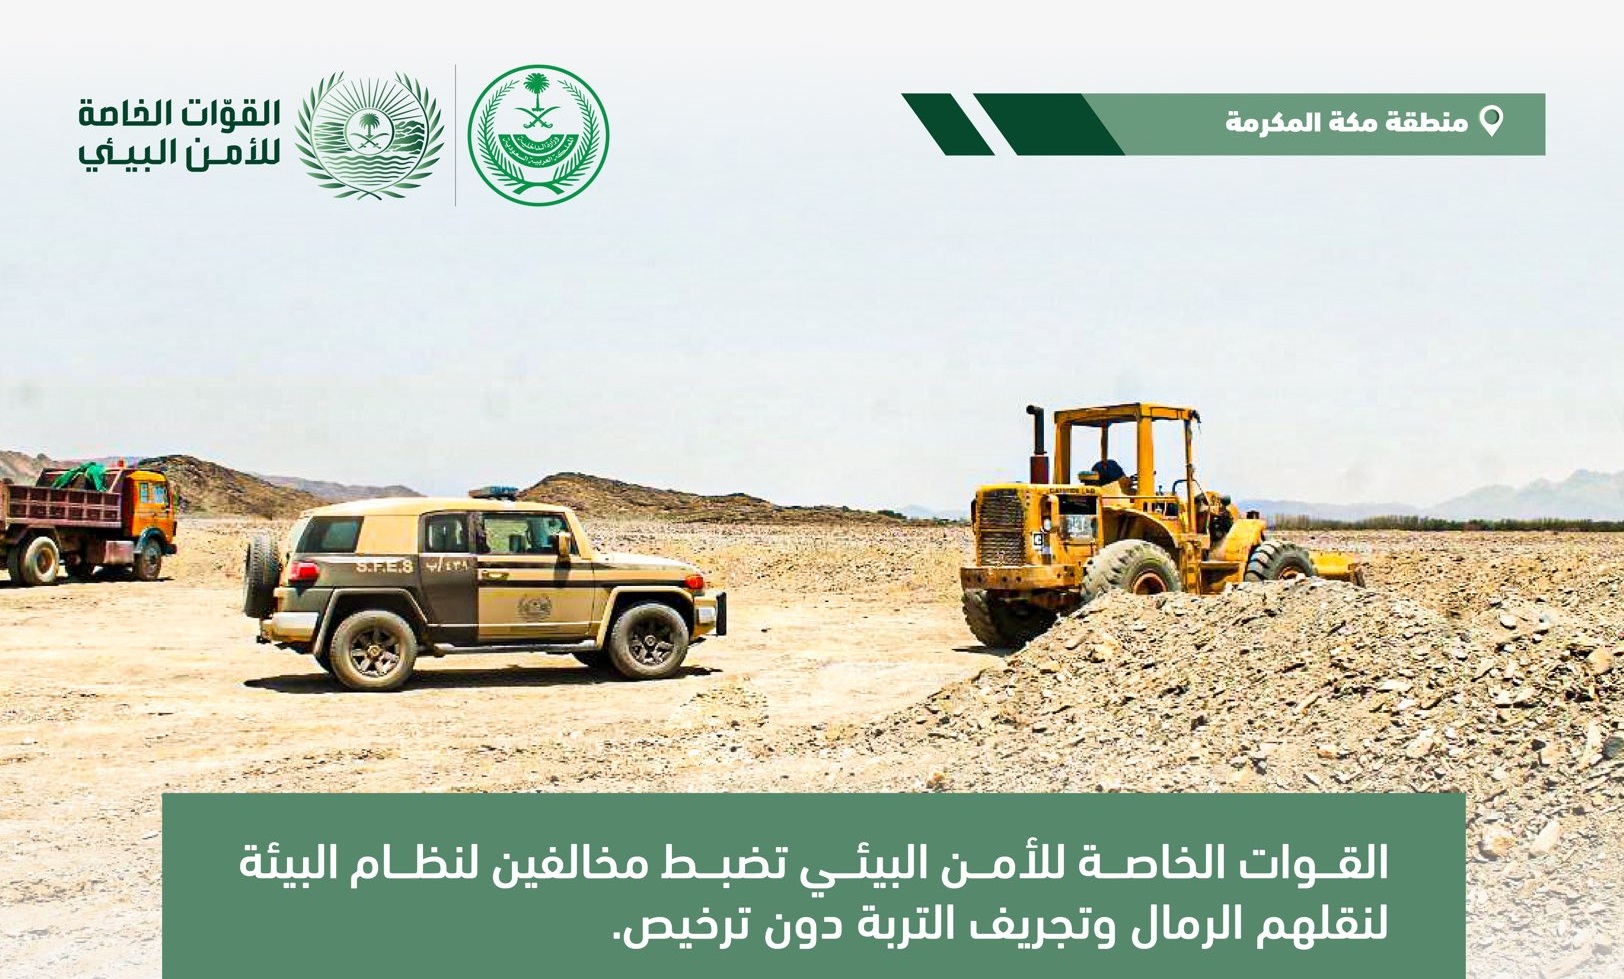 ضبط مخالفين نقلوا الرمال وجرفوا التربة دون ترخيص في مكة 